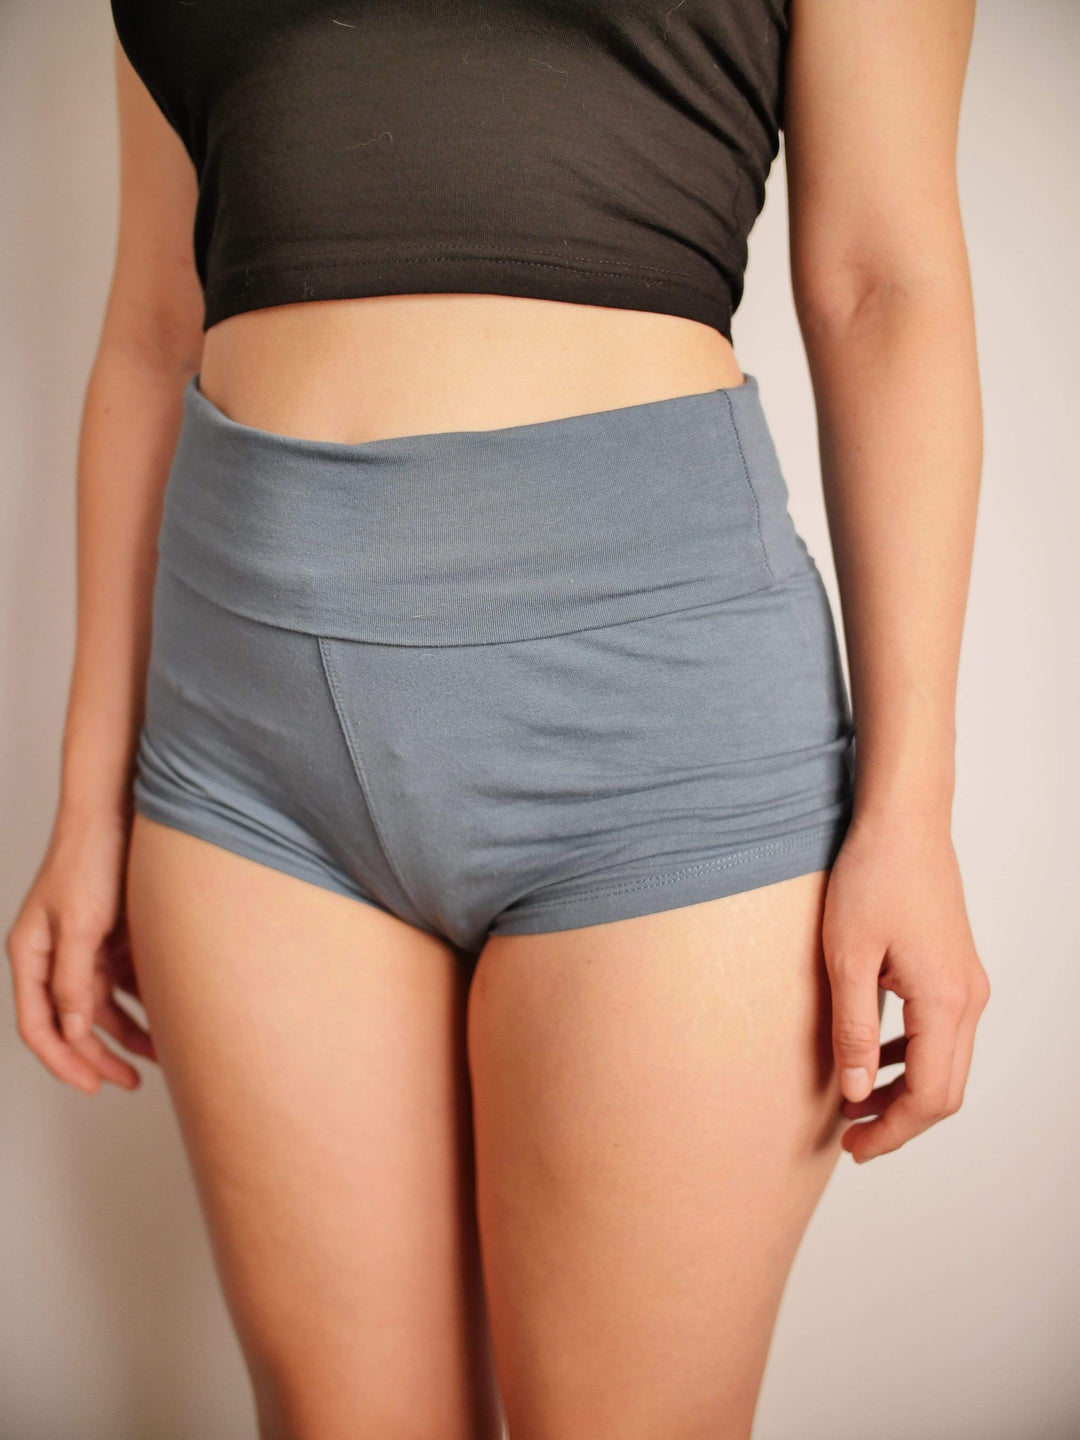 PixelThat Punderwear Yoga Shorts Danny Dorito Yoga Shorts/Pants